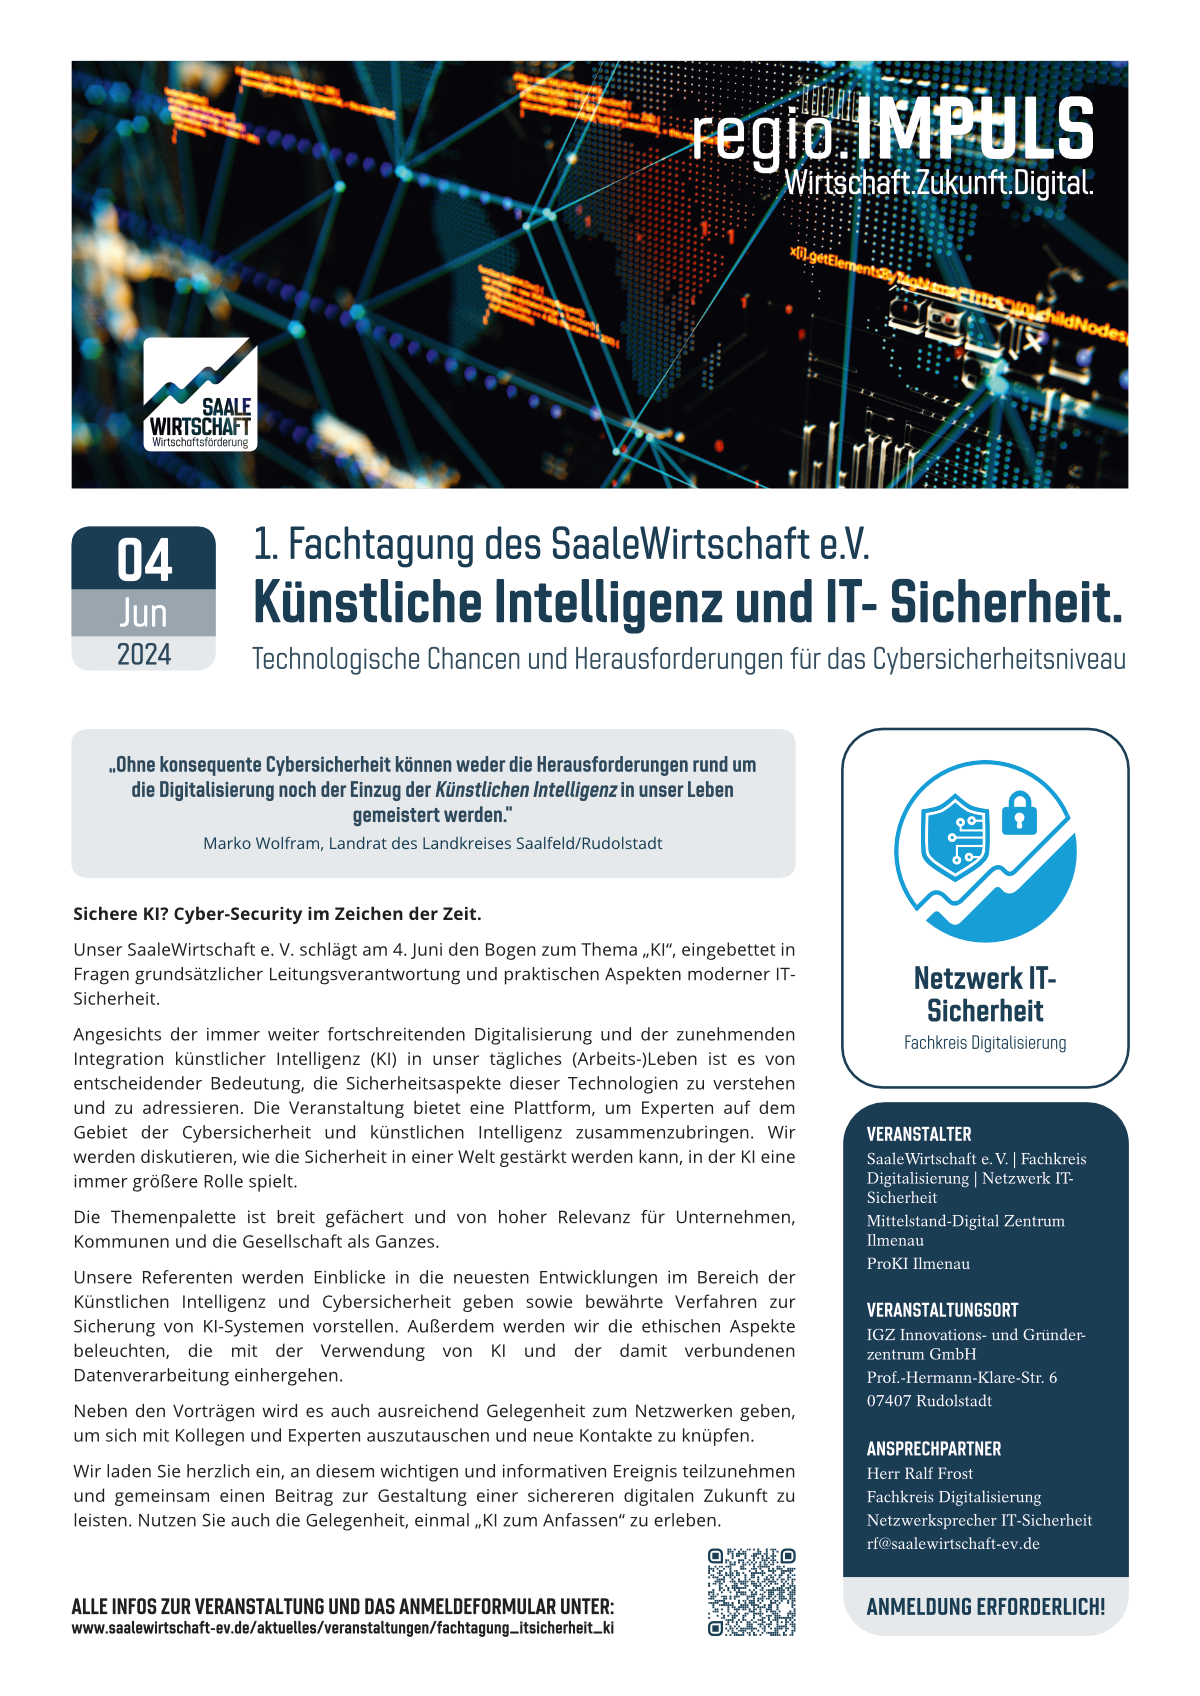 Veranstaltungsblatt "Künstliche Intelligenz und IT- Sicherheit."